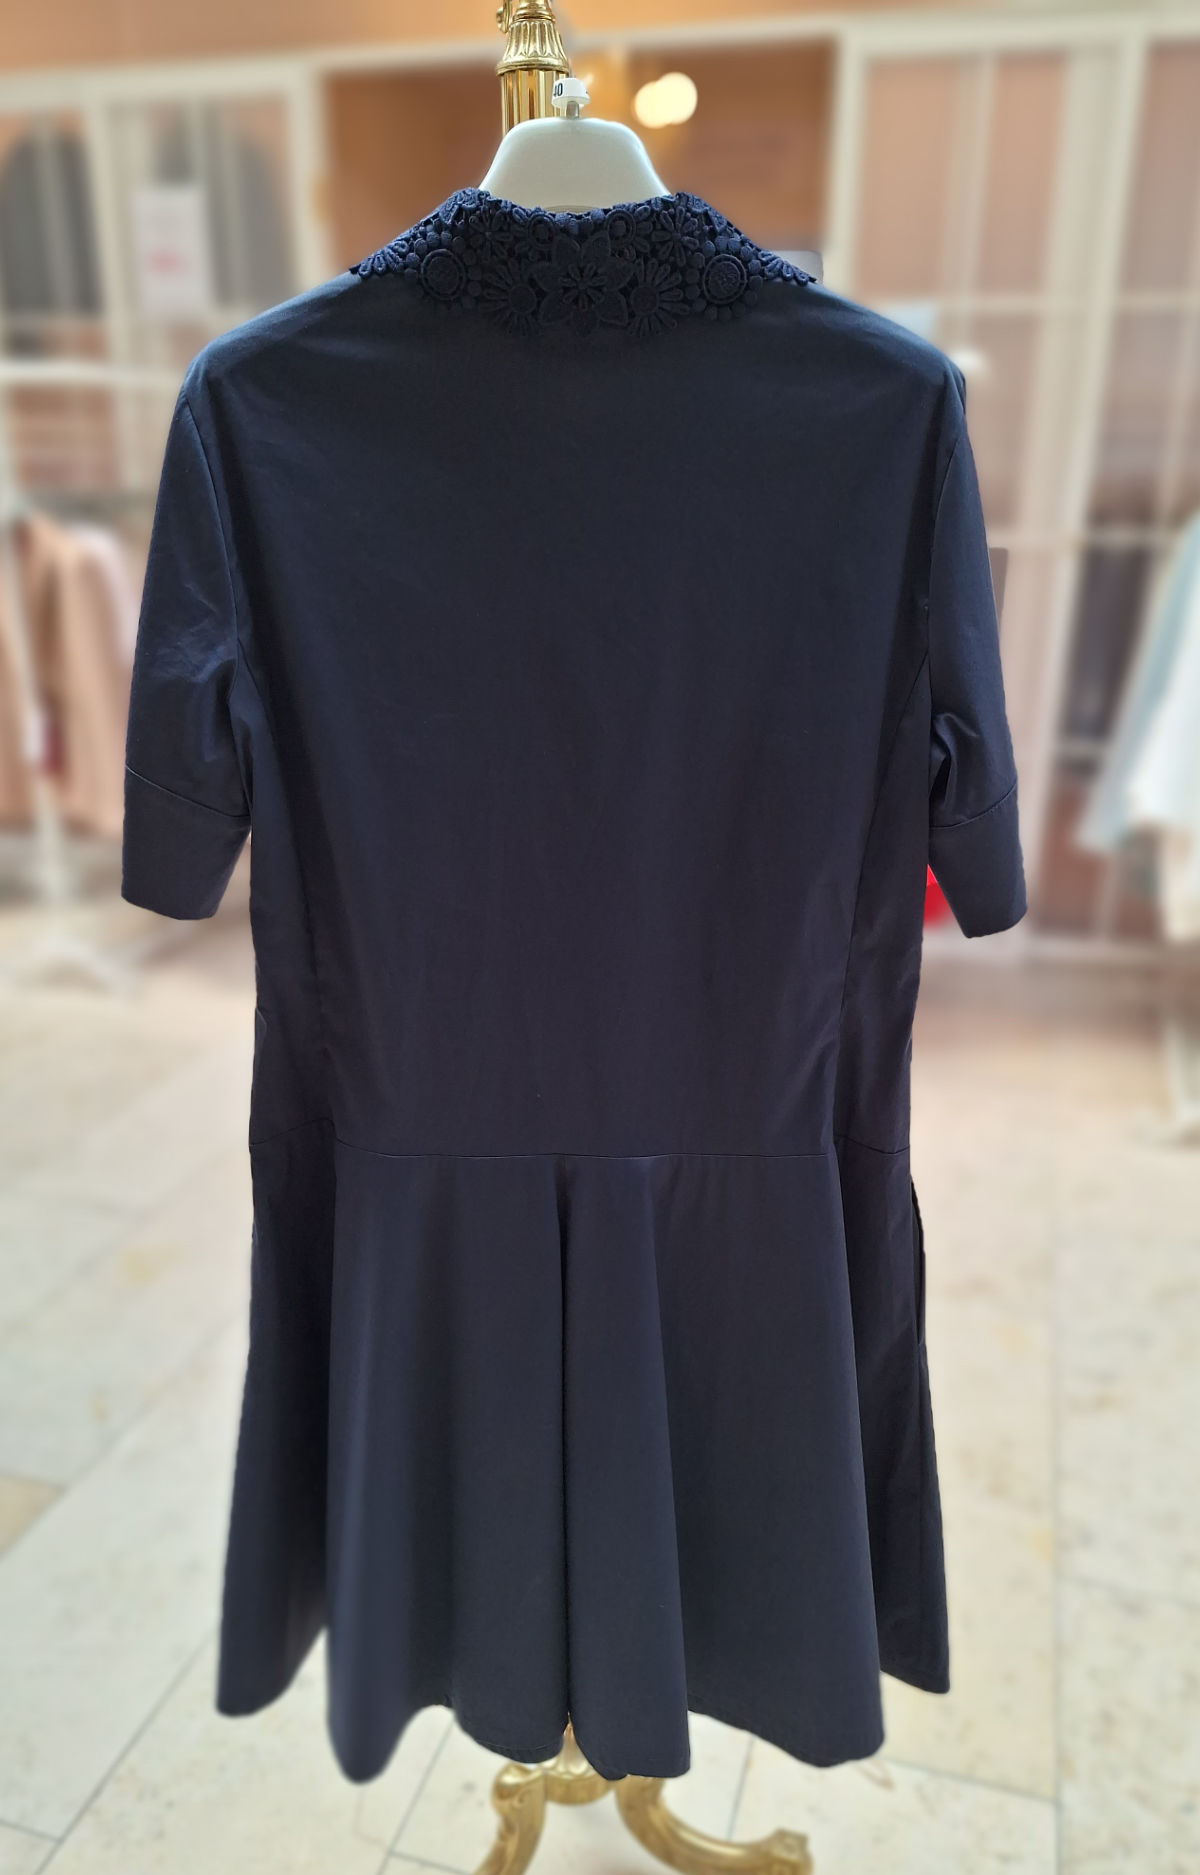 Maison Common Kleid in dunkelblau, Größe 40, mit floralem Kragen, mit Brusttasche und dreiviertel Ärmel, hintere Ansicht.